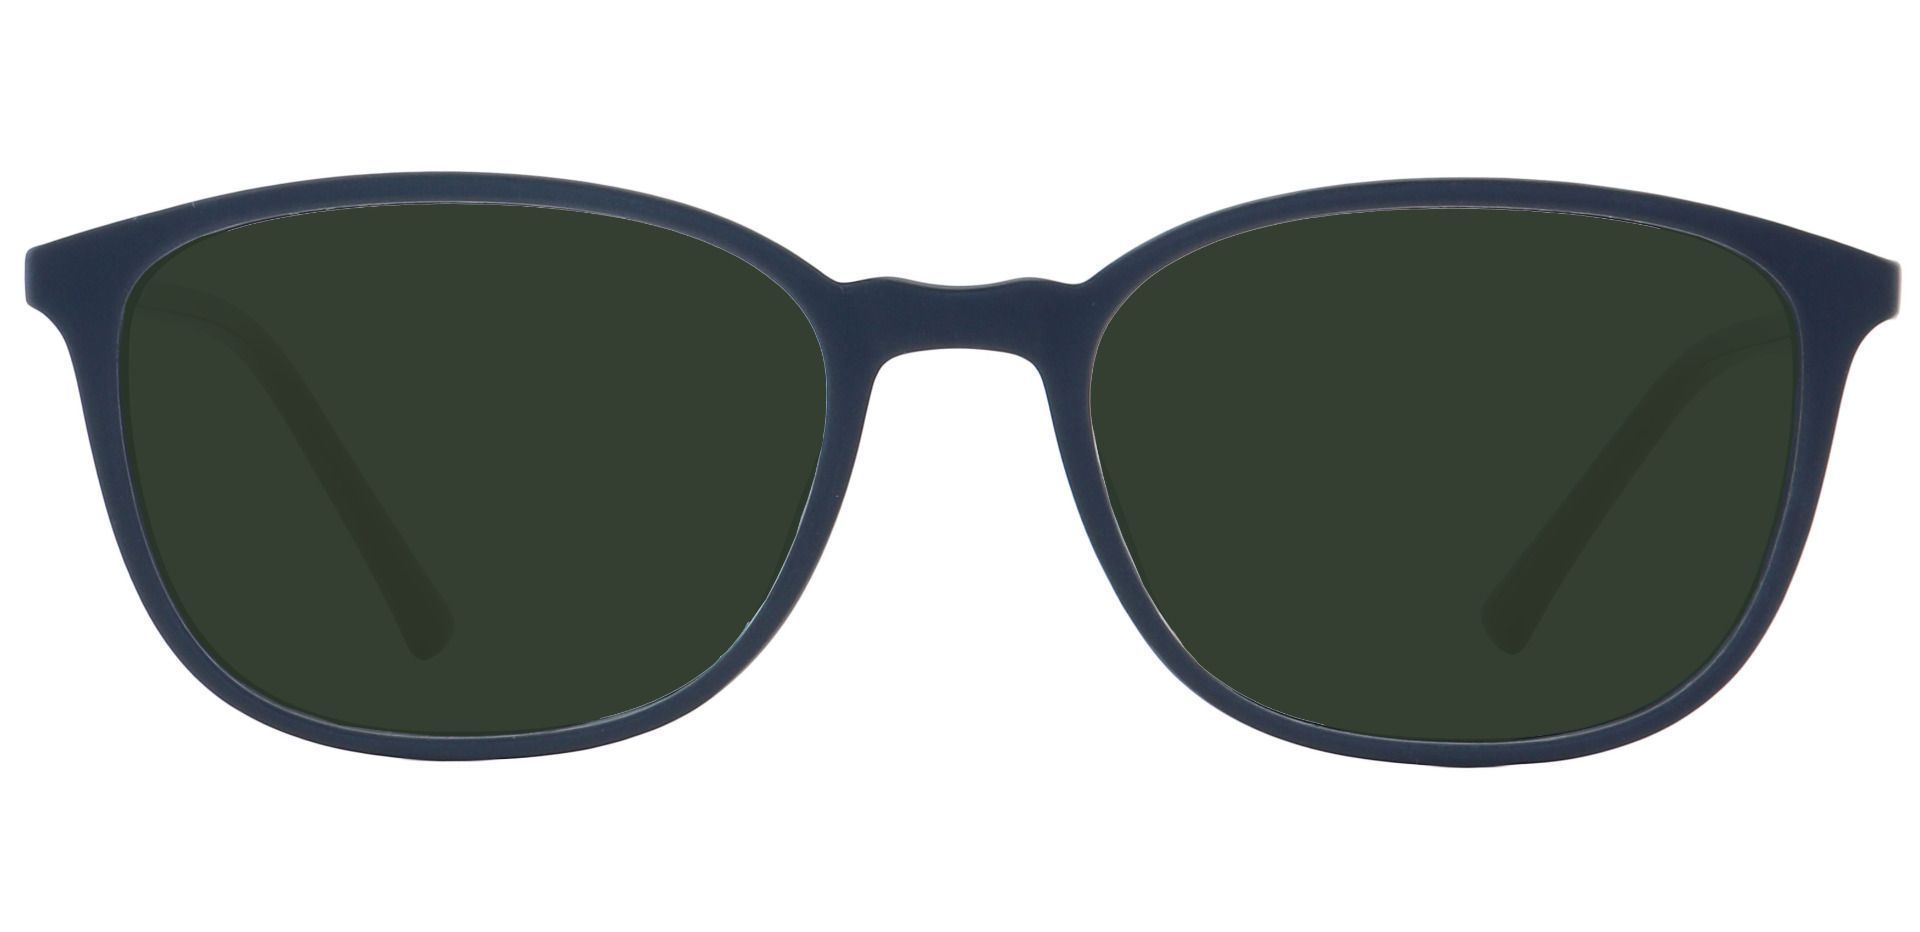 Karleen Oval Progressive Sunglasses - Black Frame With Green Lenses